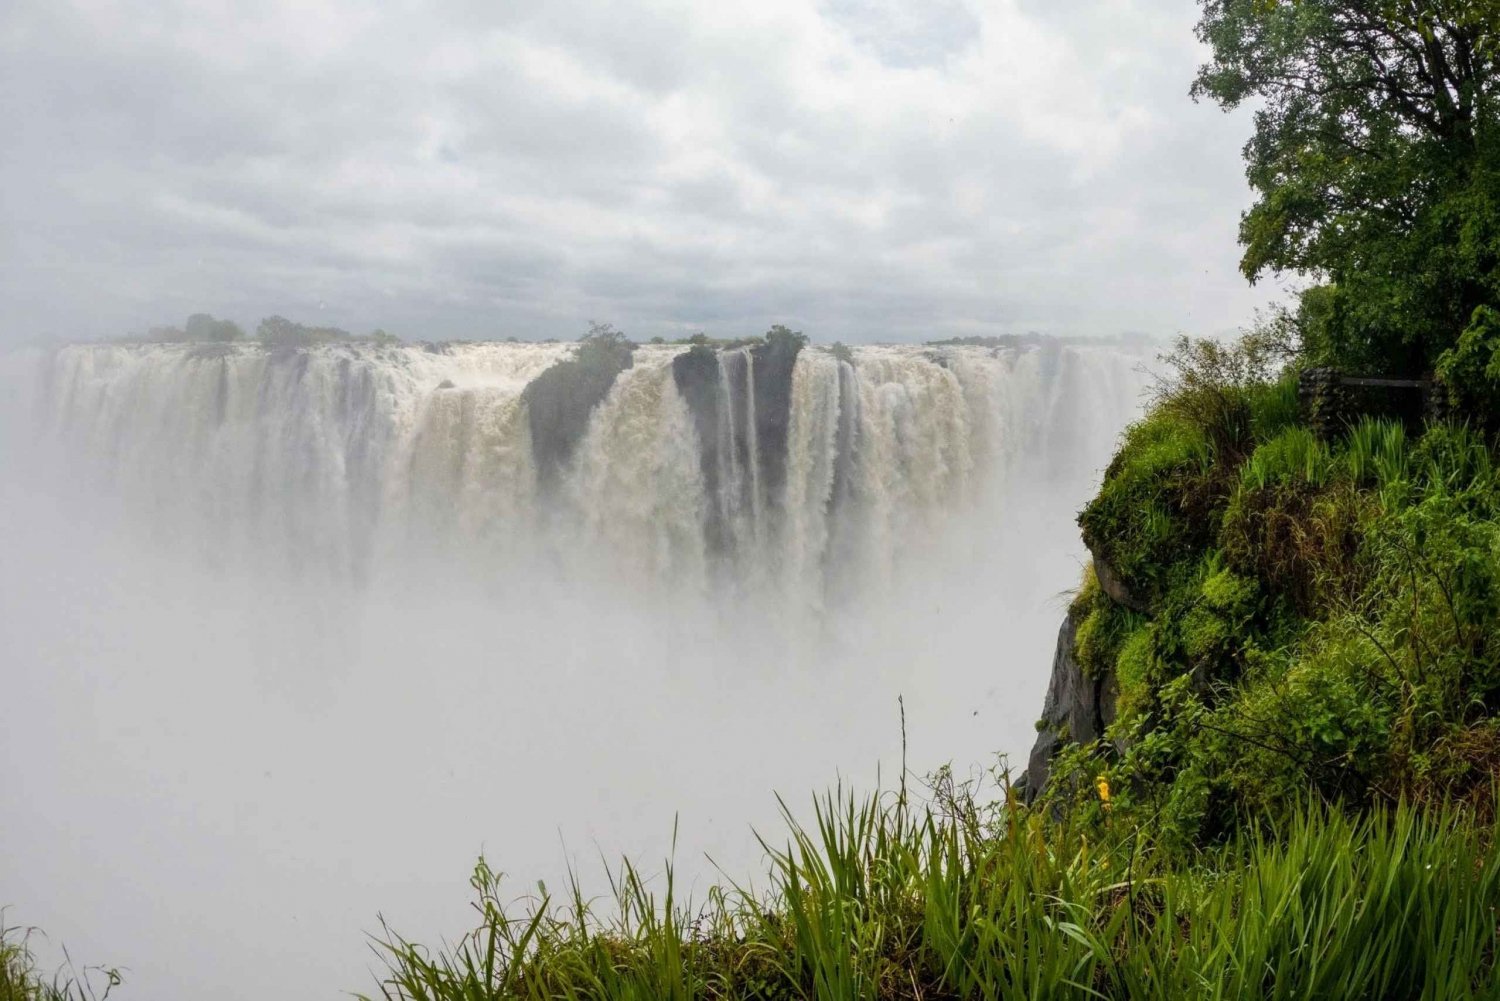 Zambia: Victoria Falls Guided Tour